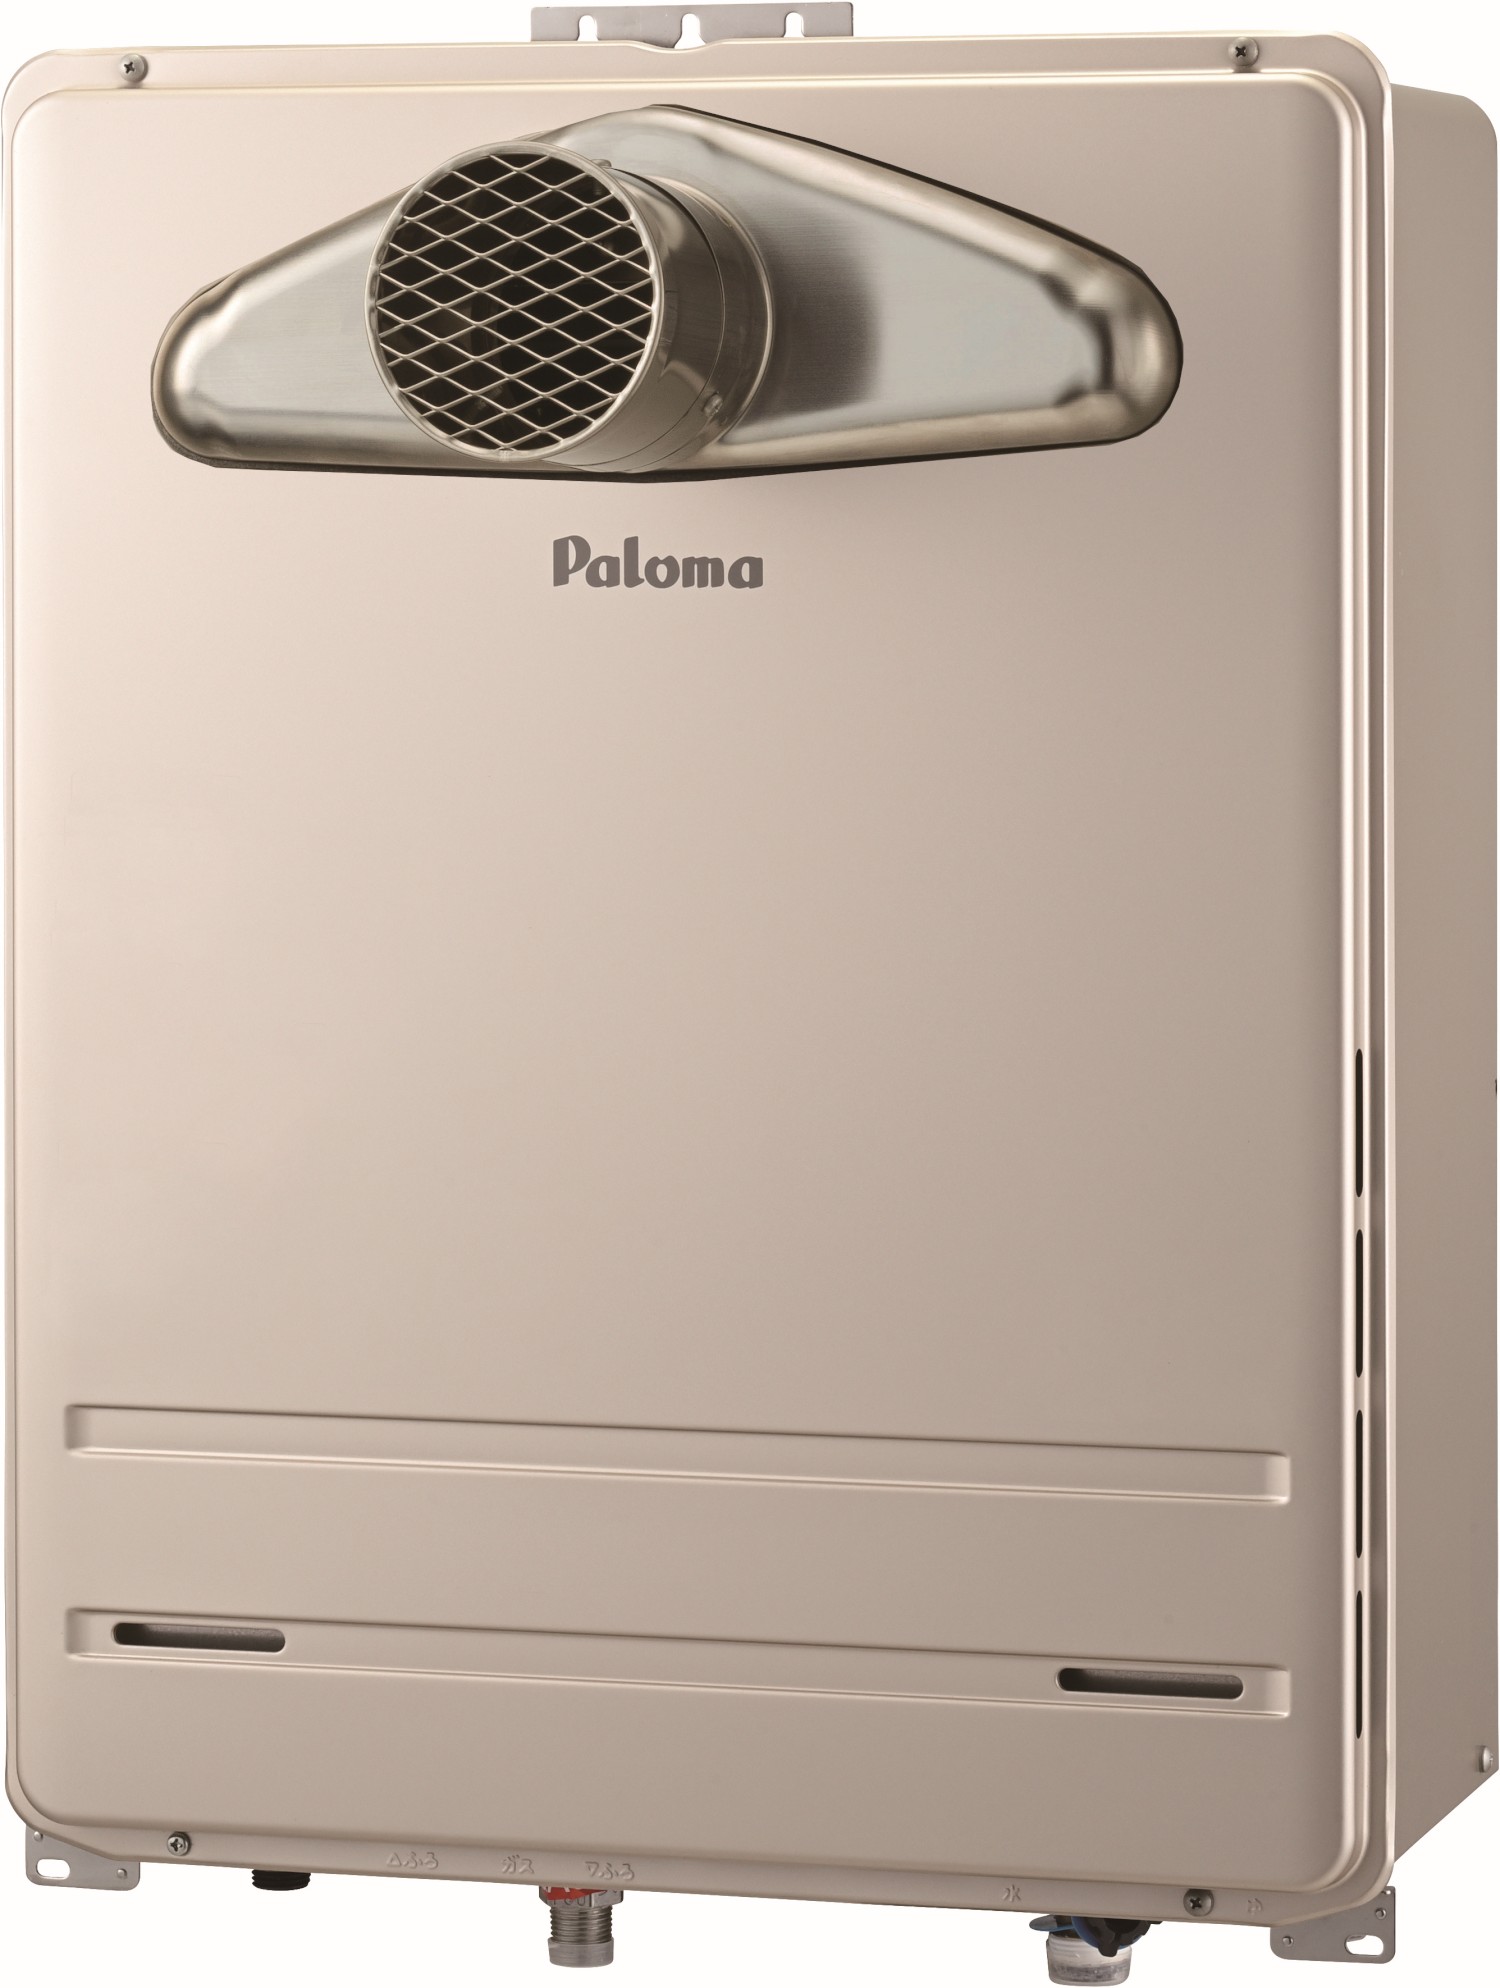 パロマ 【FH-C2010AW】パロマ ガスふろ給湯器 コンパクトオートタイプ 20号 壁掛型・PS 標準設置型 【Paloma】 